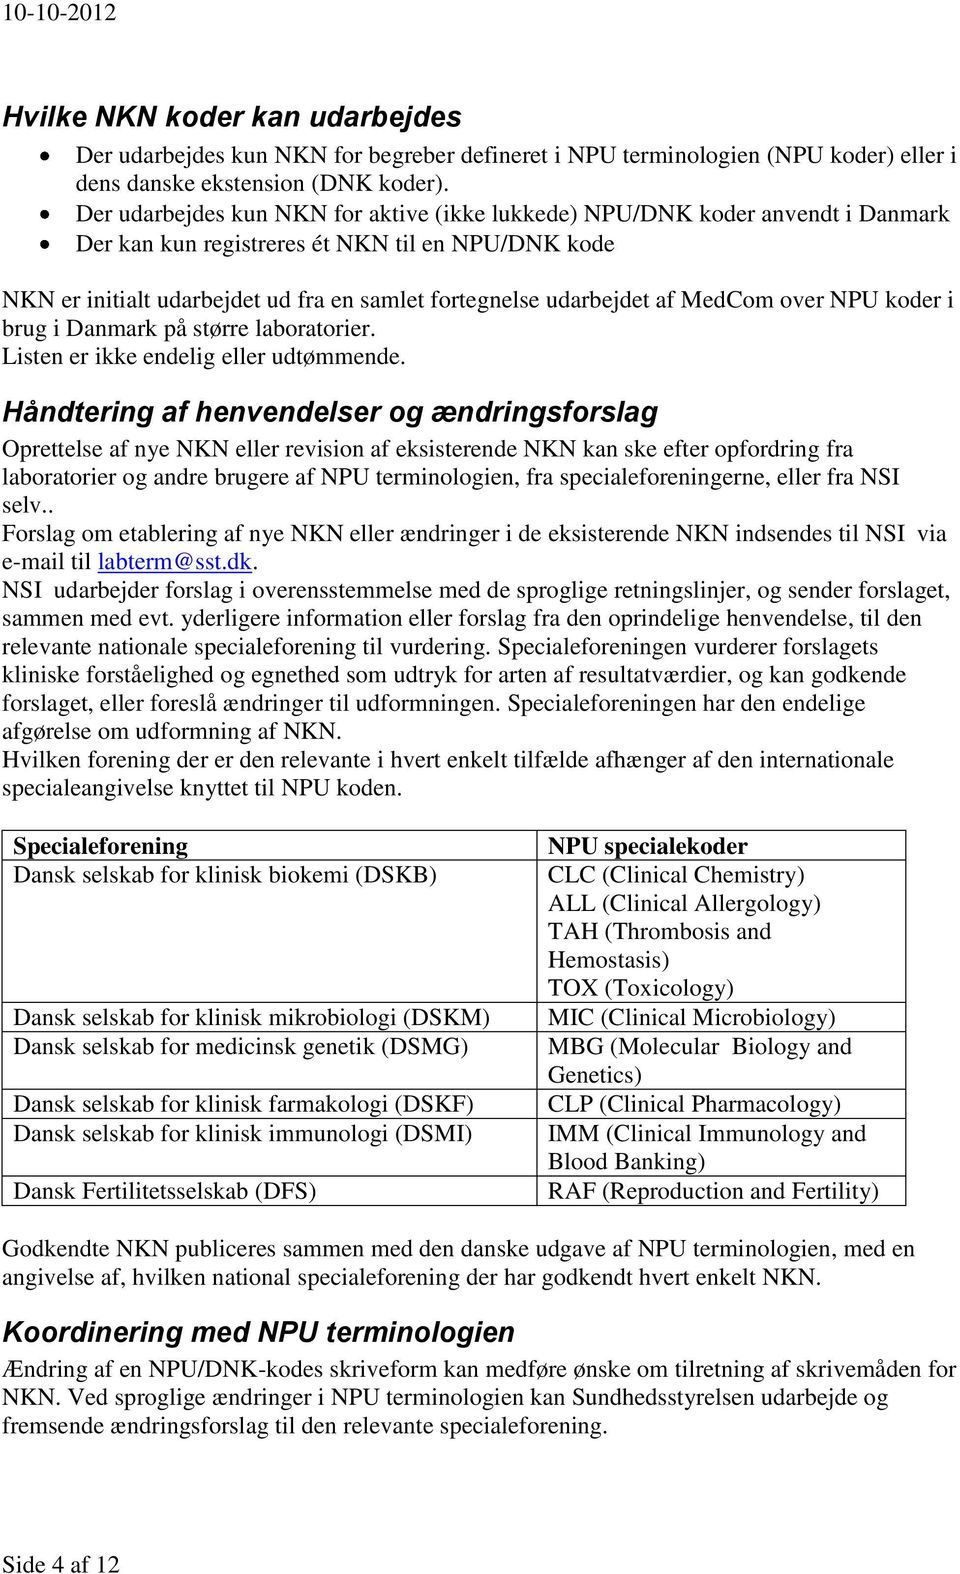 af MedCom over NPU koder i brug i Danmark på større laboratorier. Listen er ikke endelig eller udtømmende.